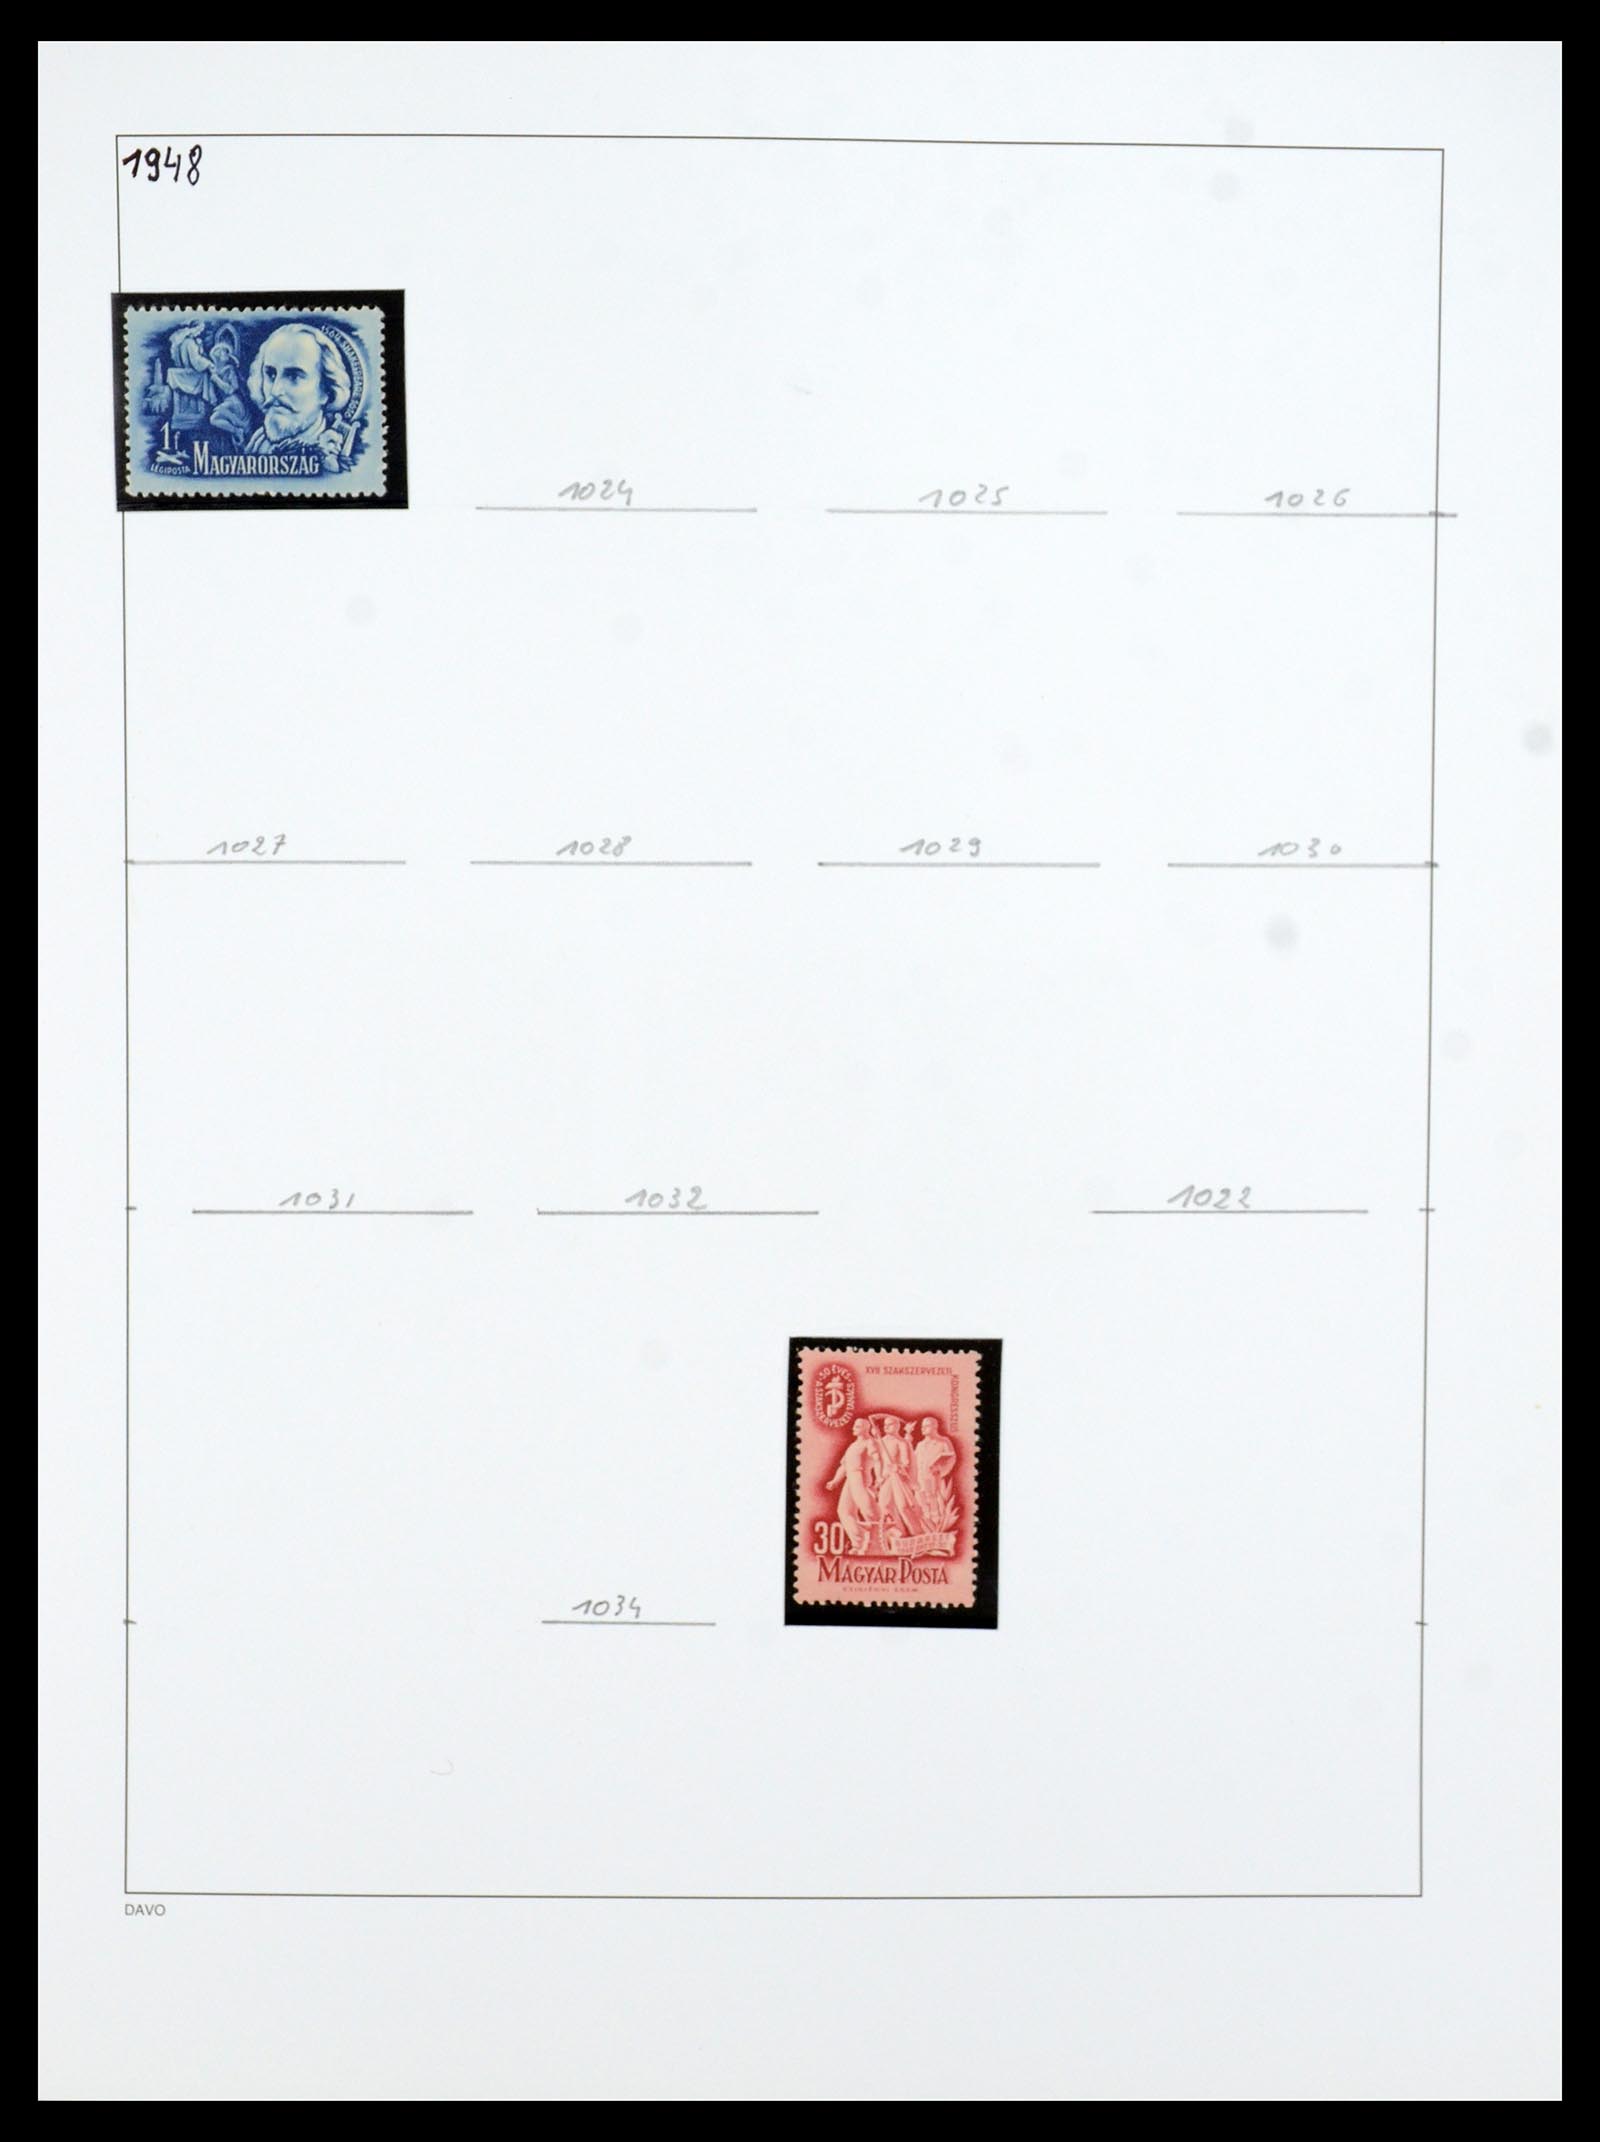 35956 063 - Postzegelverzameling 35956 Hongarije 1871-1991.